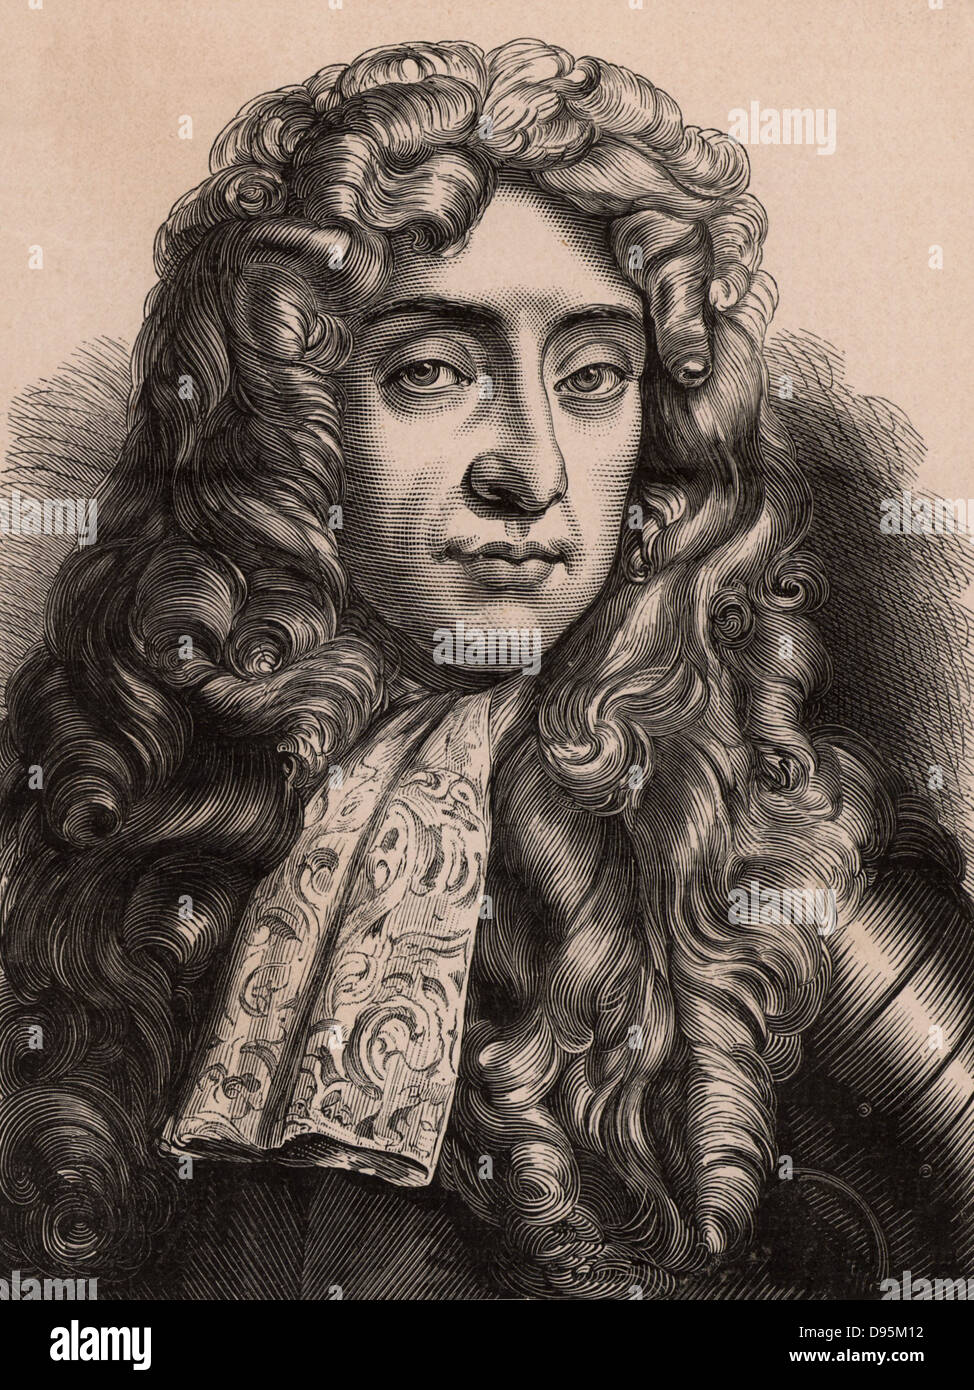 James II (1633-1701) Roi de Grande-Bretagne et d'Irlande 1685-1688. Fils de Charles I et frère de Charles II. Le dernier roi catholique d'Angleterre, il a fui en France après Guillaume d'Orange (Guillaume III) a atterri à Torbay. Un membre de la dynastie Stuart. Banque D'Images